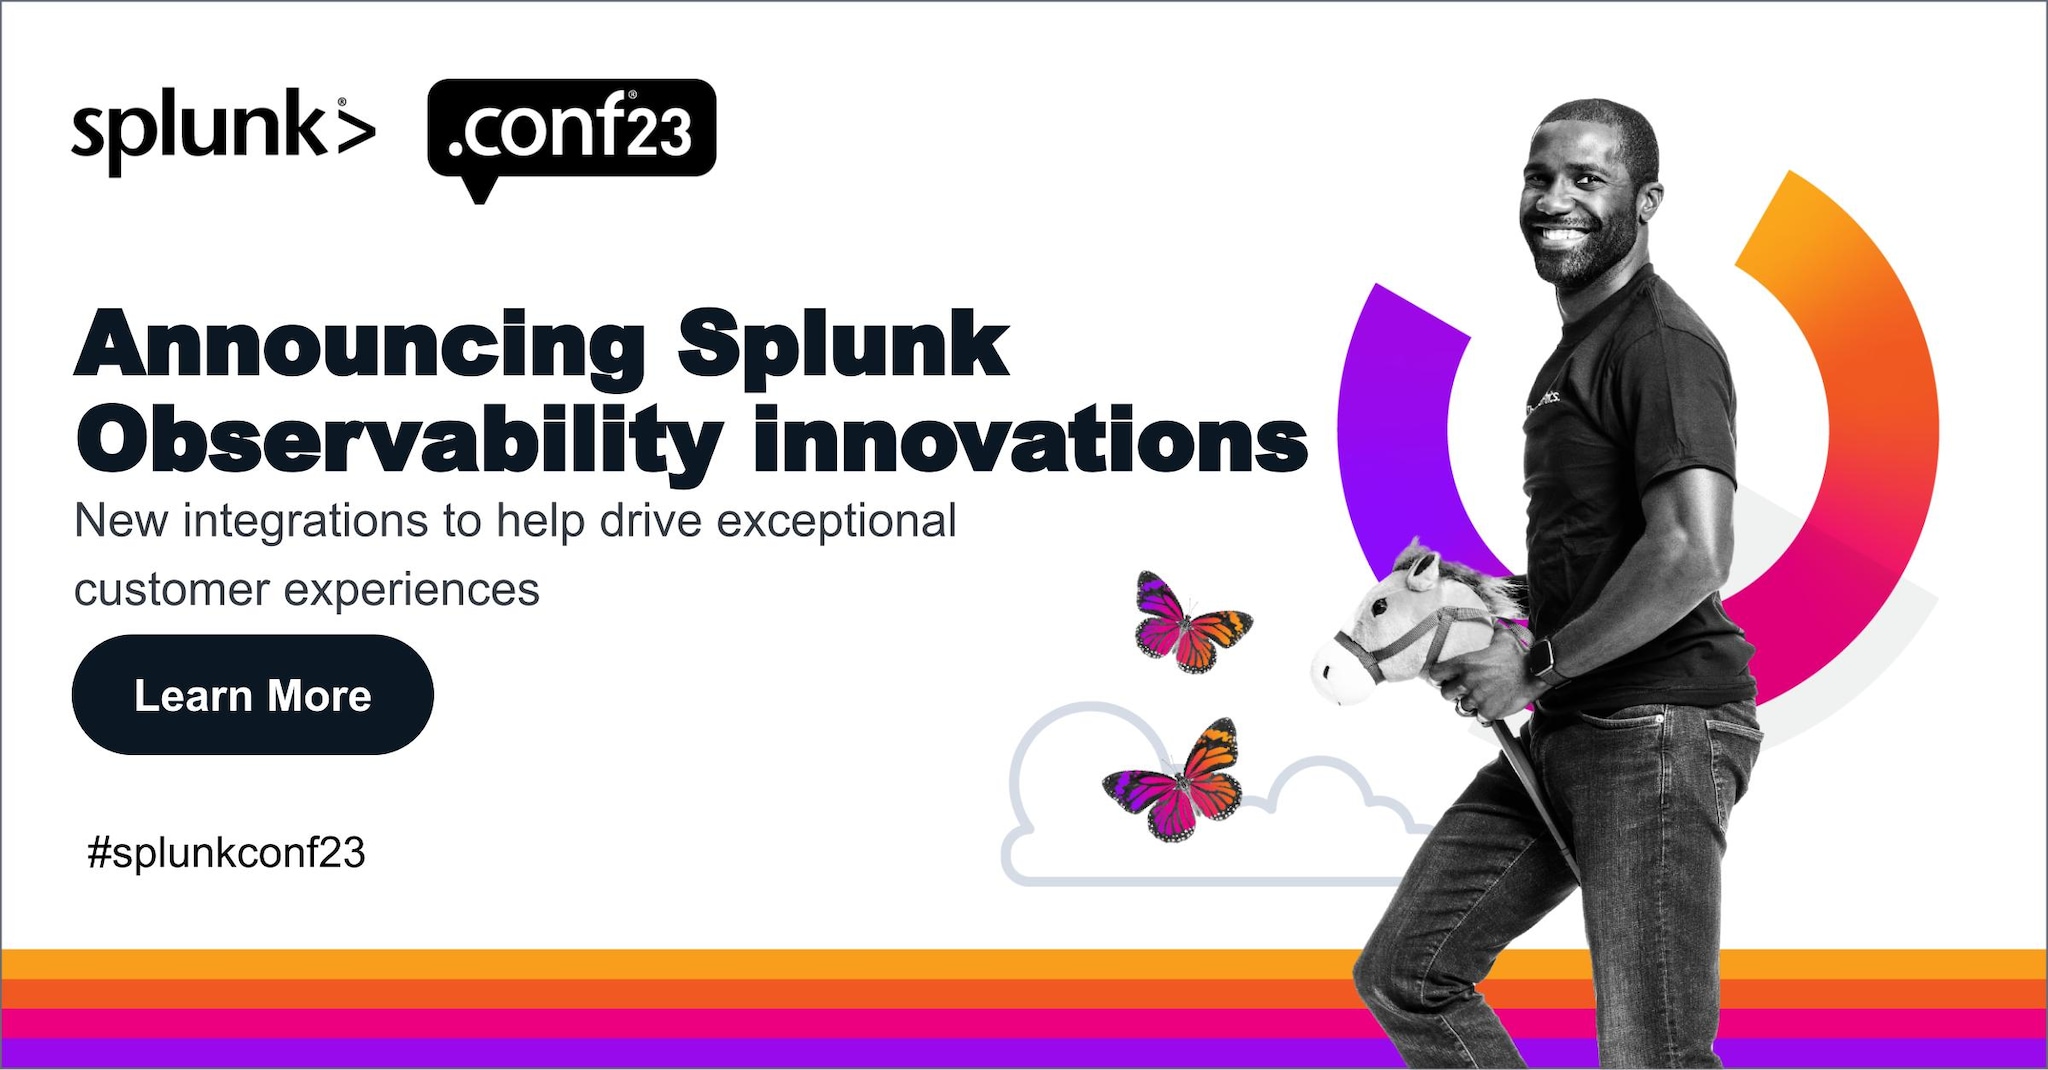 Splunkオブザーバビリティソリューションの最新イノベーション